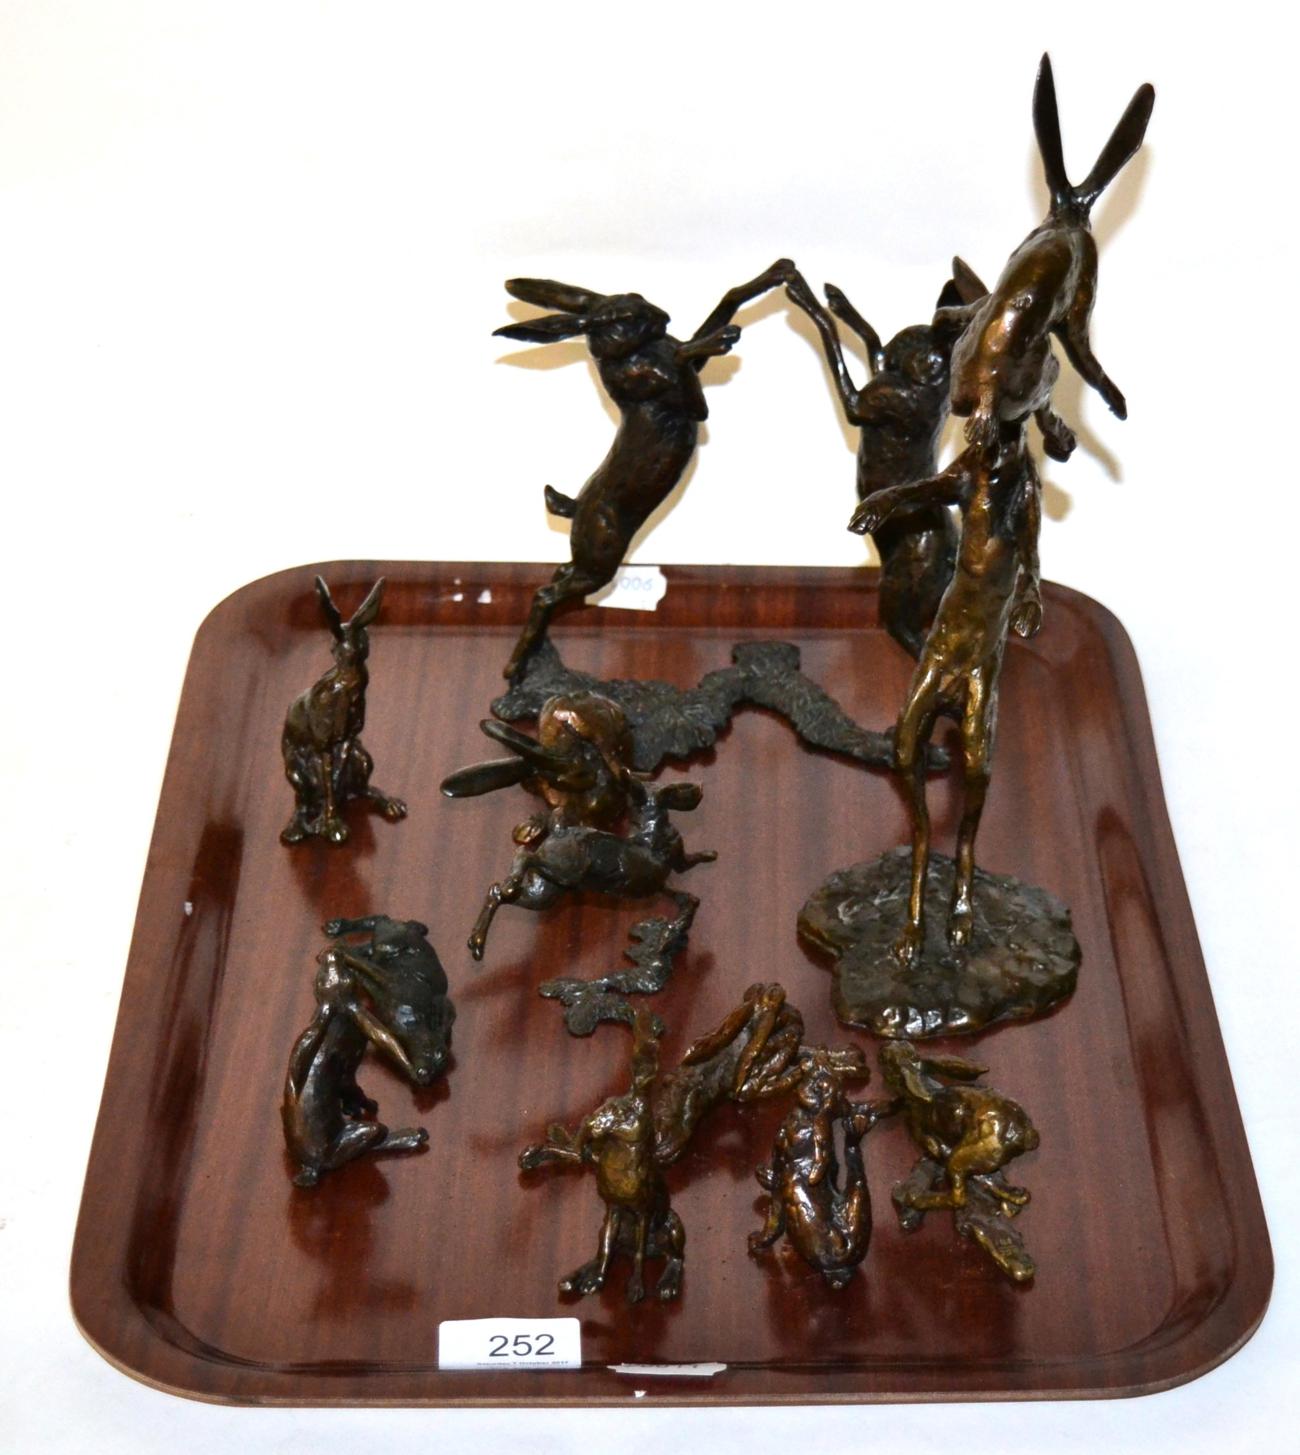 Eleven bronze figures of hares